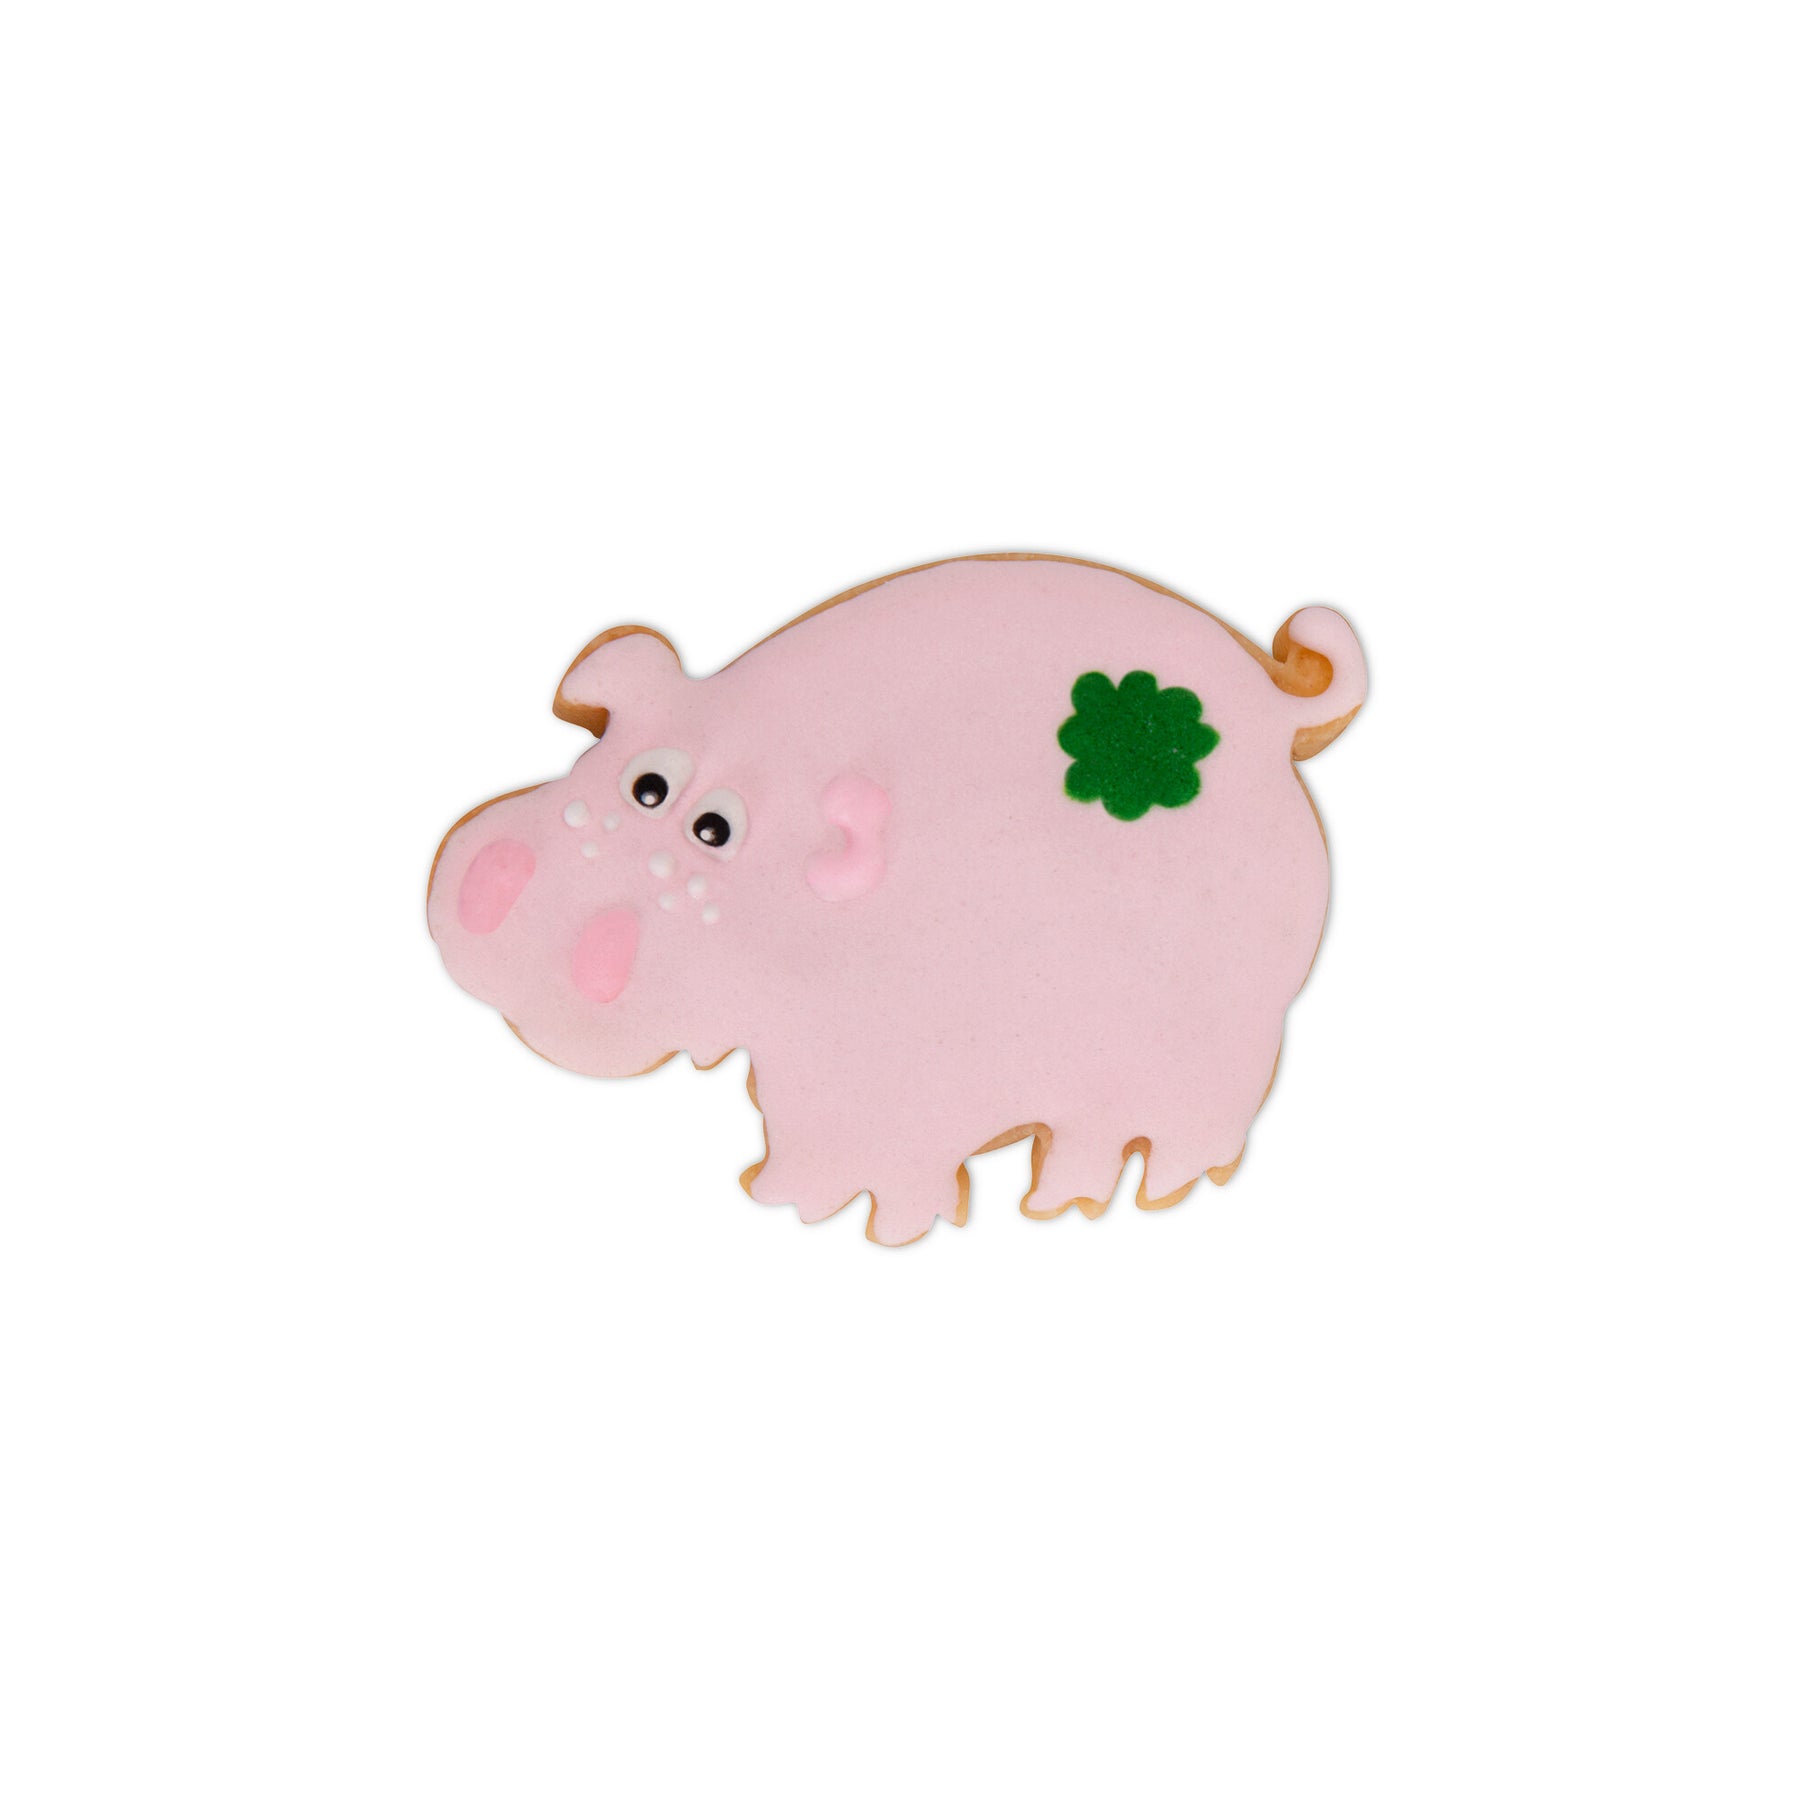 Präge-Ausstecher Schwein mit Auswerfer 6cm